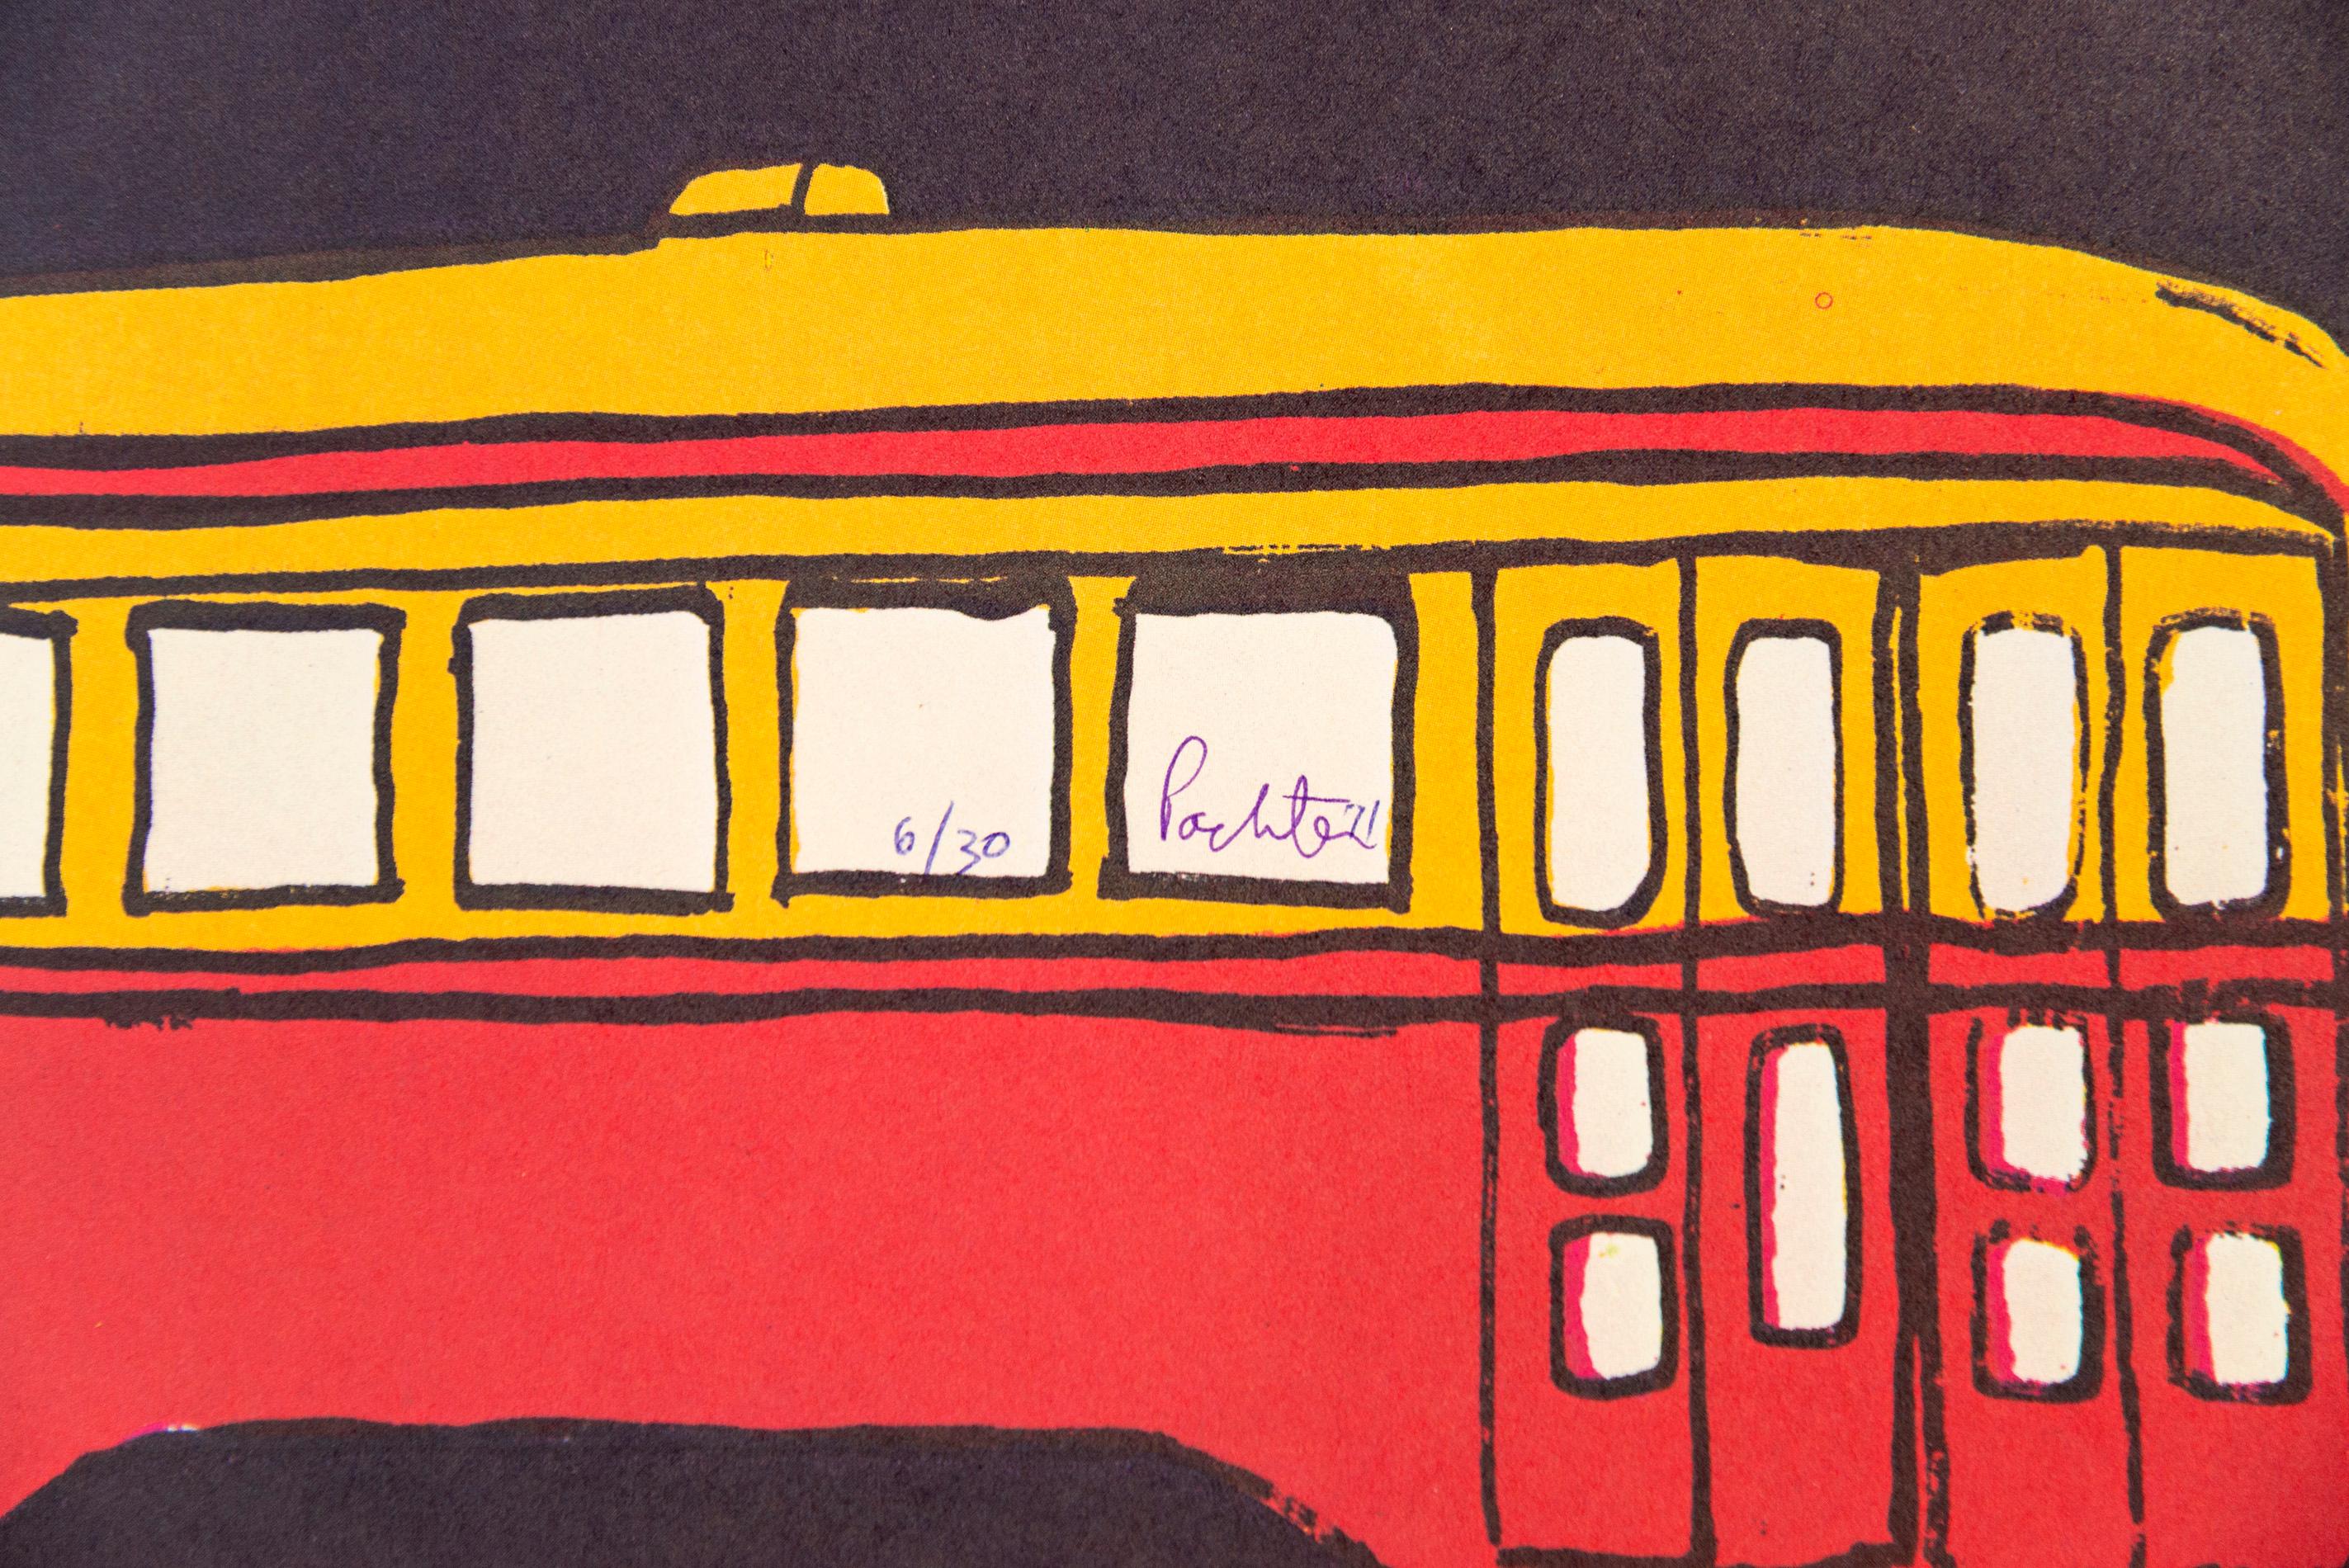 Streetcar Circus 5/20 - lithographie figurative, ludique, pop-art, édition limitée - Art de Charles Pachter